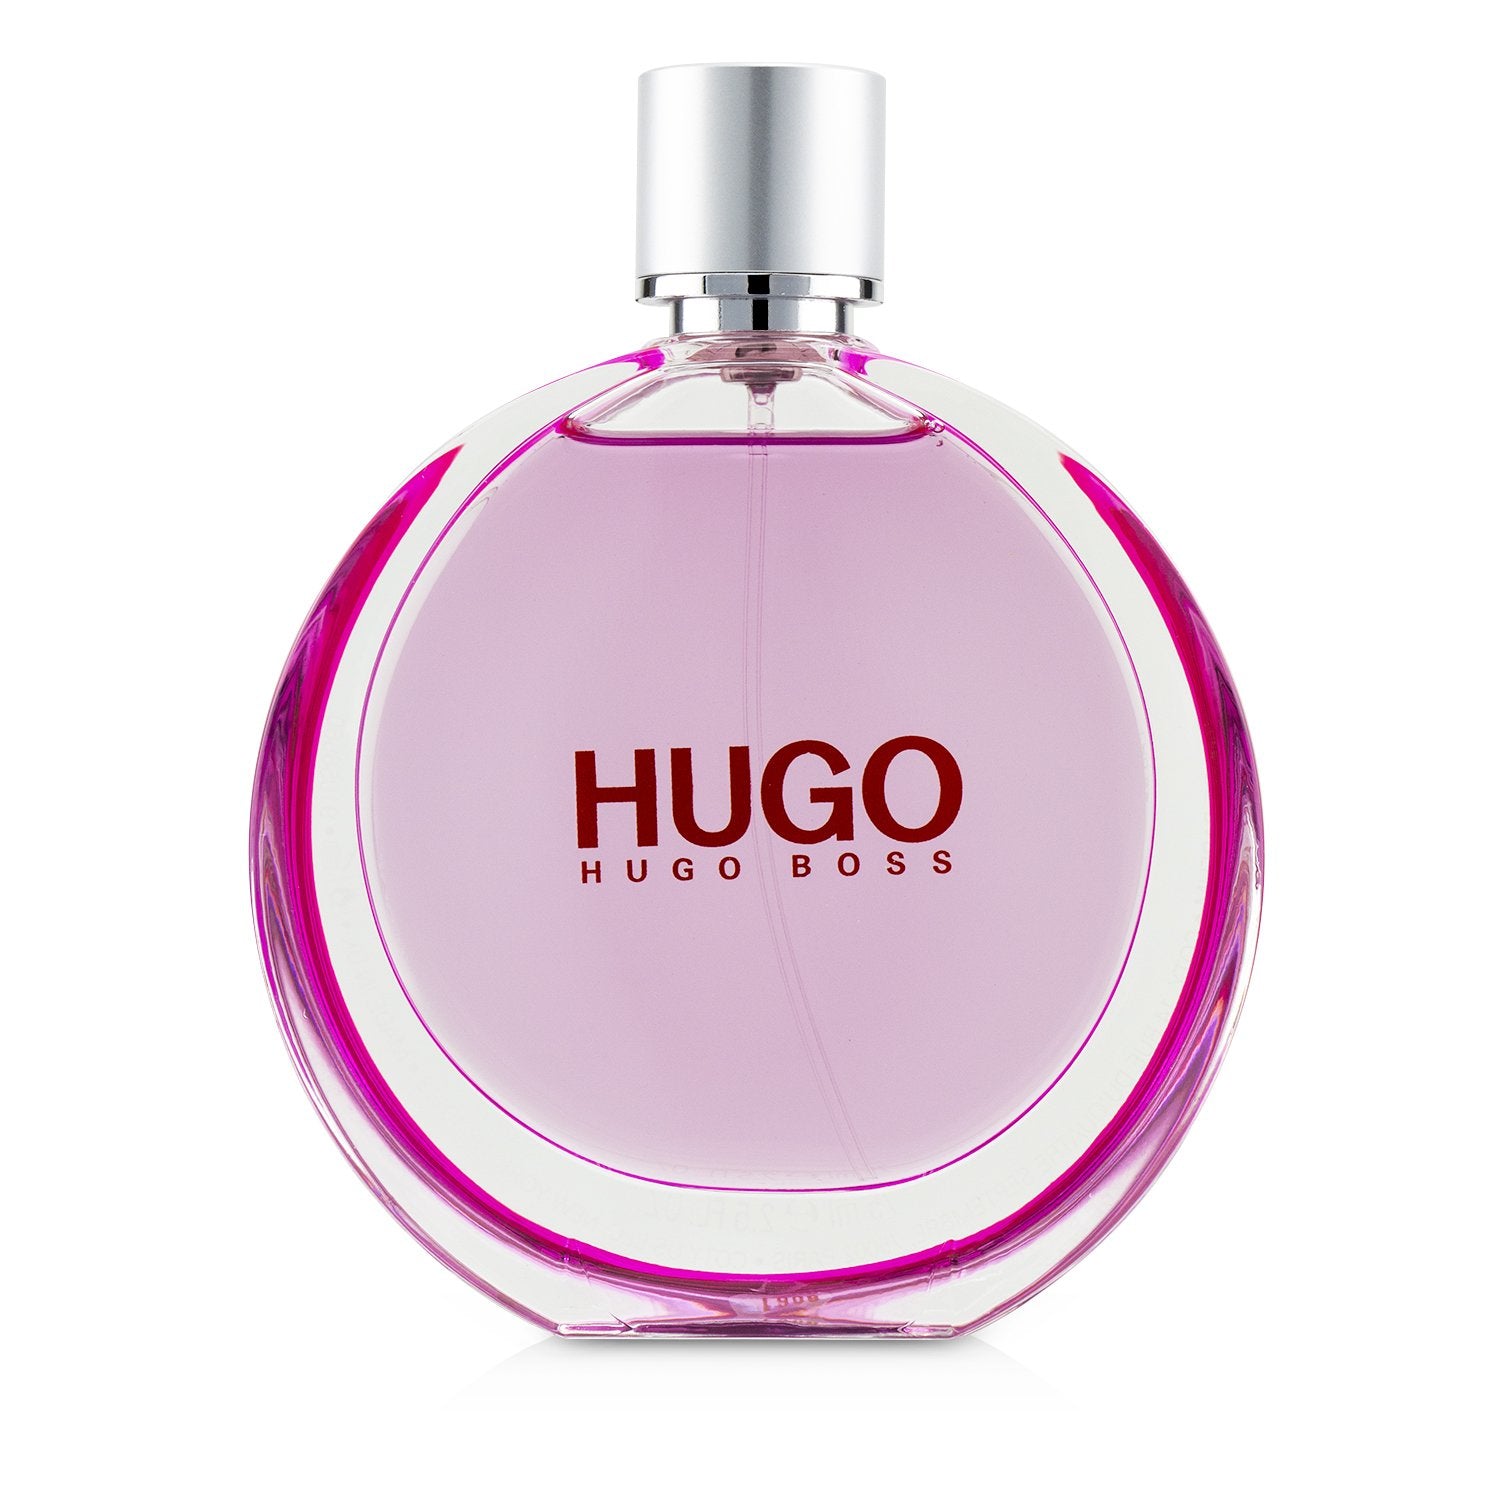 Buy Hugo Women Perfume